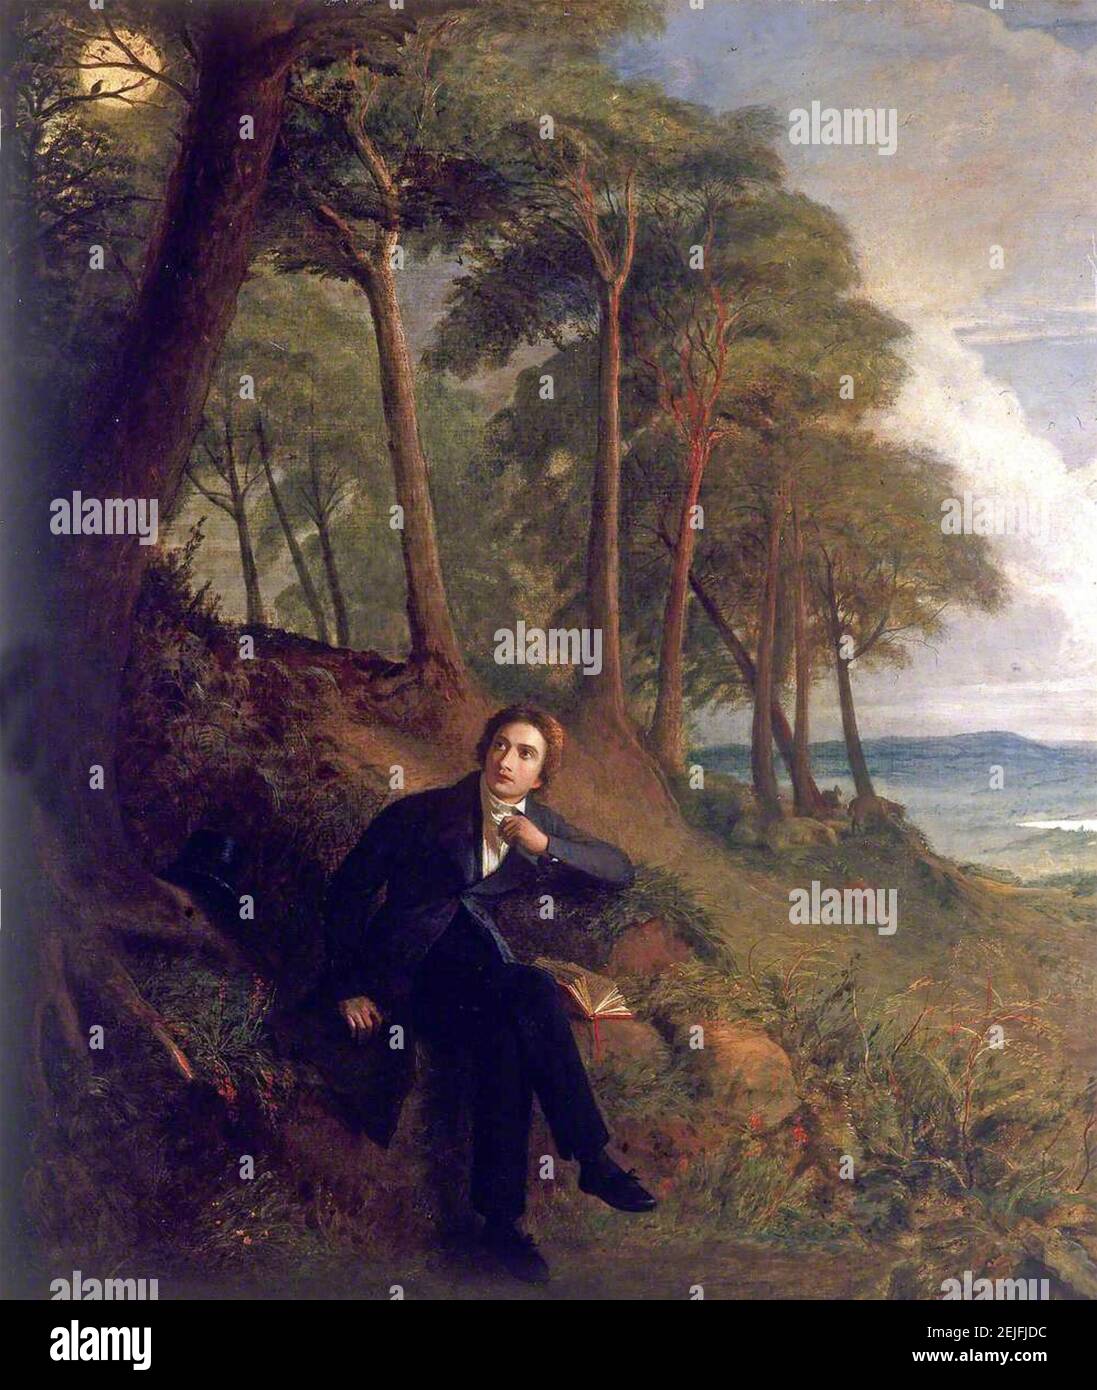 JOHN KEATS (1795-1821) englischer Dichter. Das Gemälde von Joseph Severn aus dem Jahr 1845 zeigt Keats auf Hampstead Heath und lauscht einer Nachtigall Stockfoto